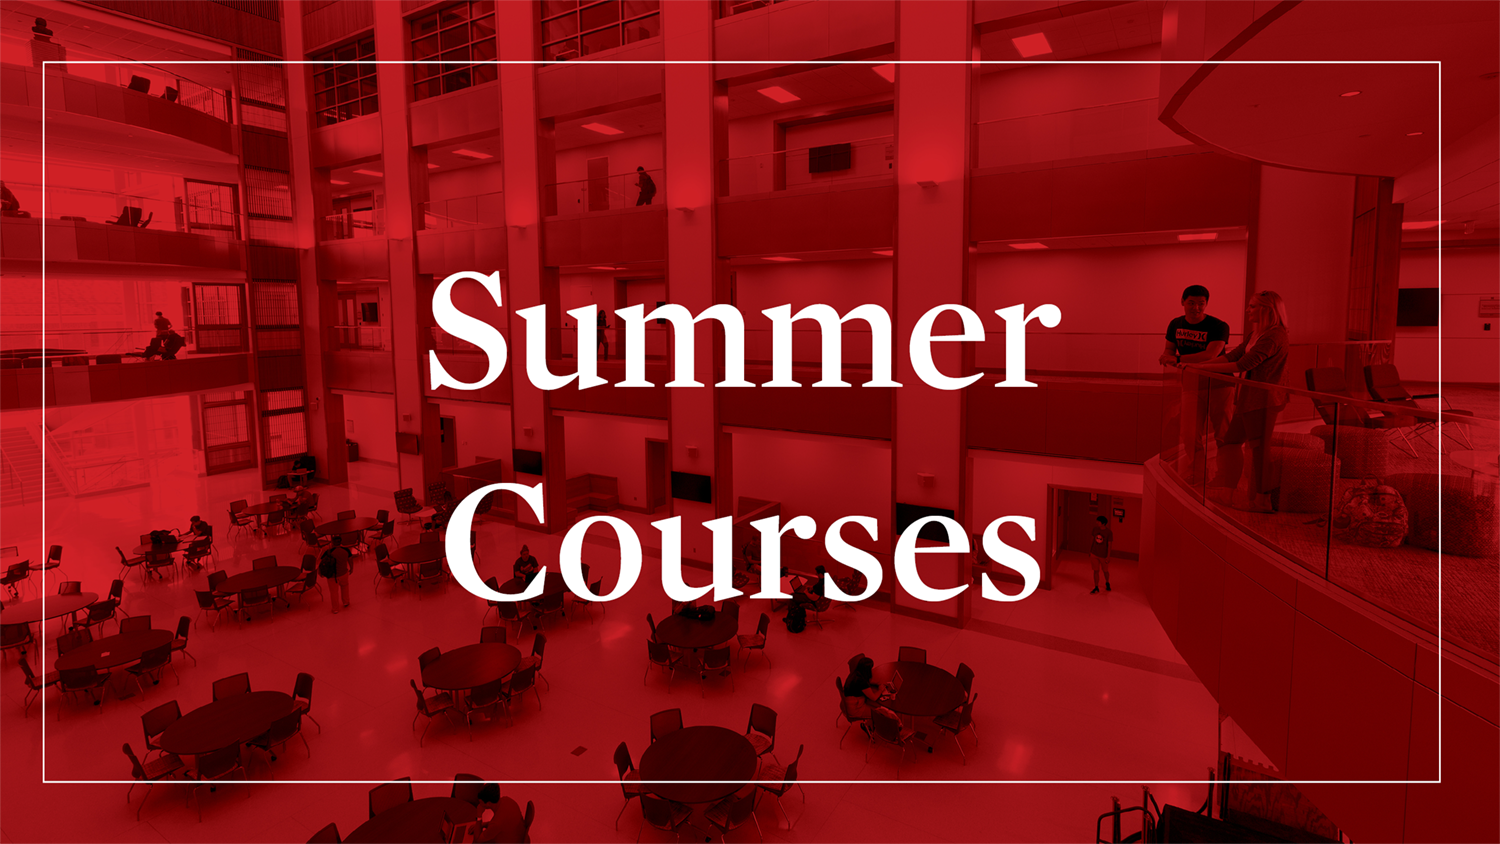 Summer courses Announce University of NebraskaLincoln